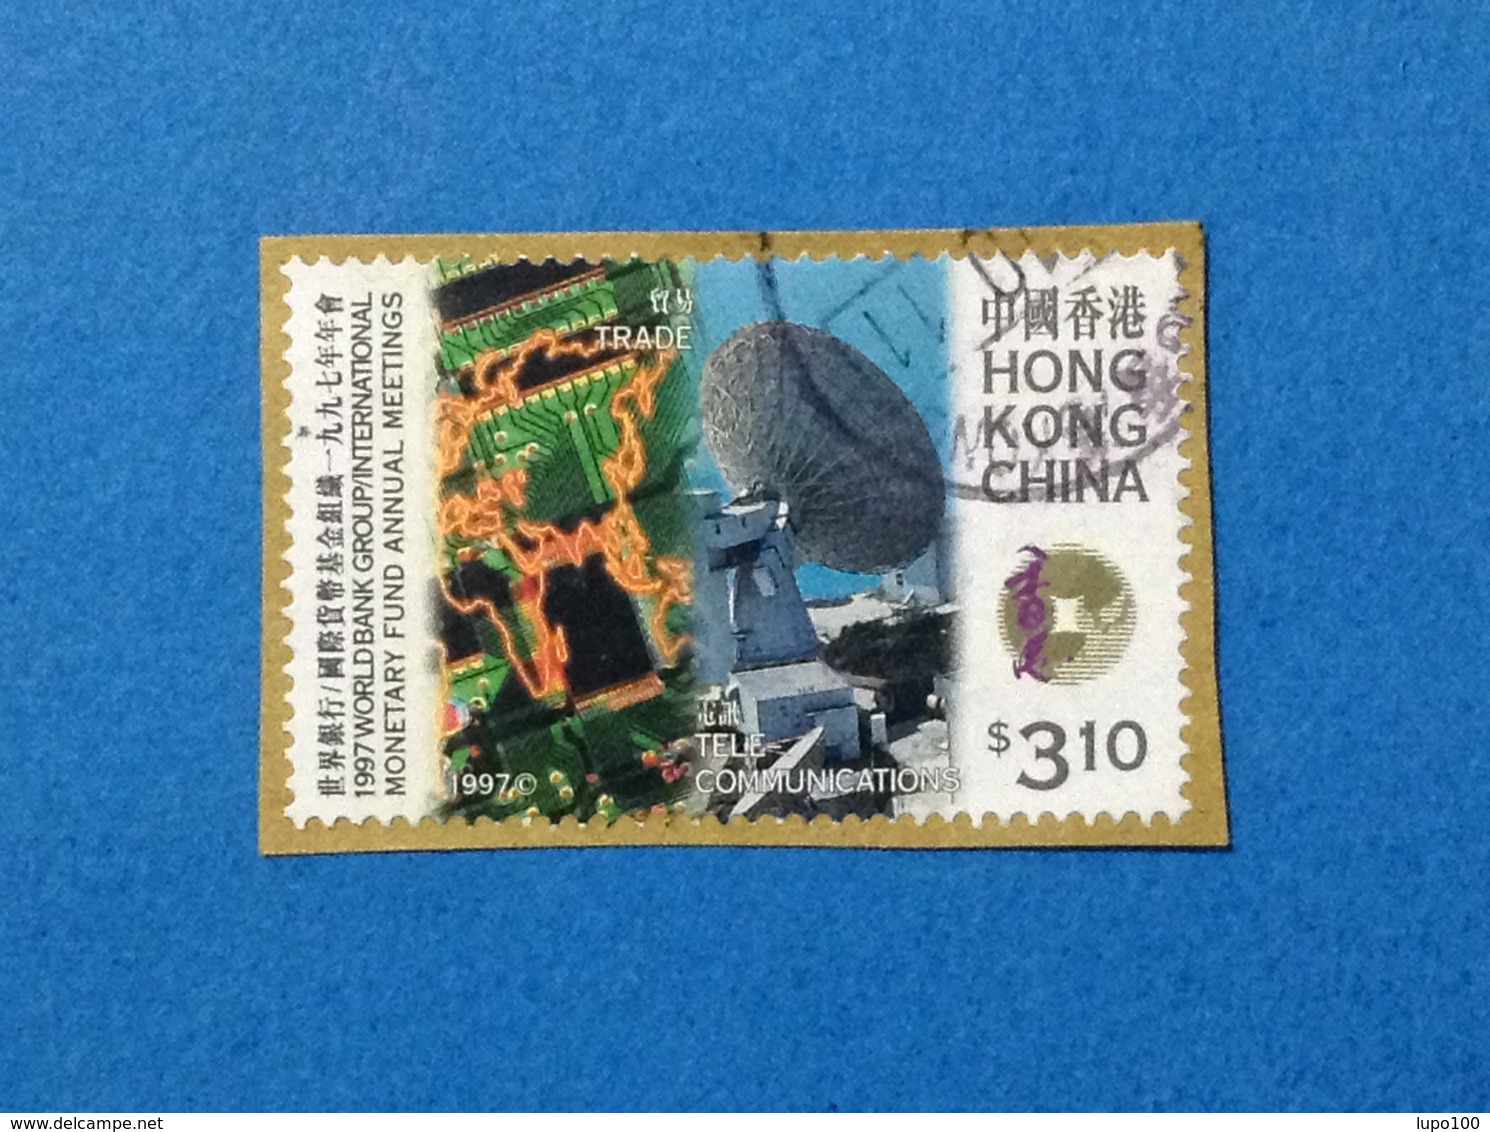 1997 HONG KONG CHINA FRANCOBOLLO USATO STAMP USED TRADE TELECOMUNICATIONS $ 3.10 - Usati